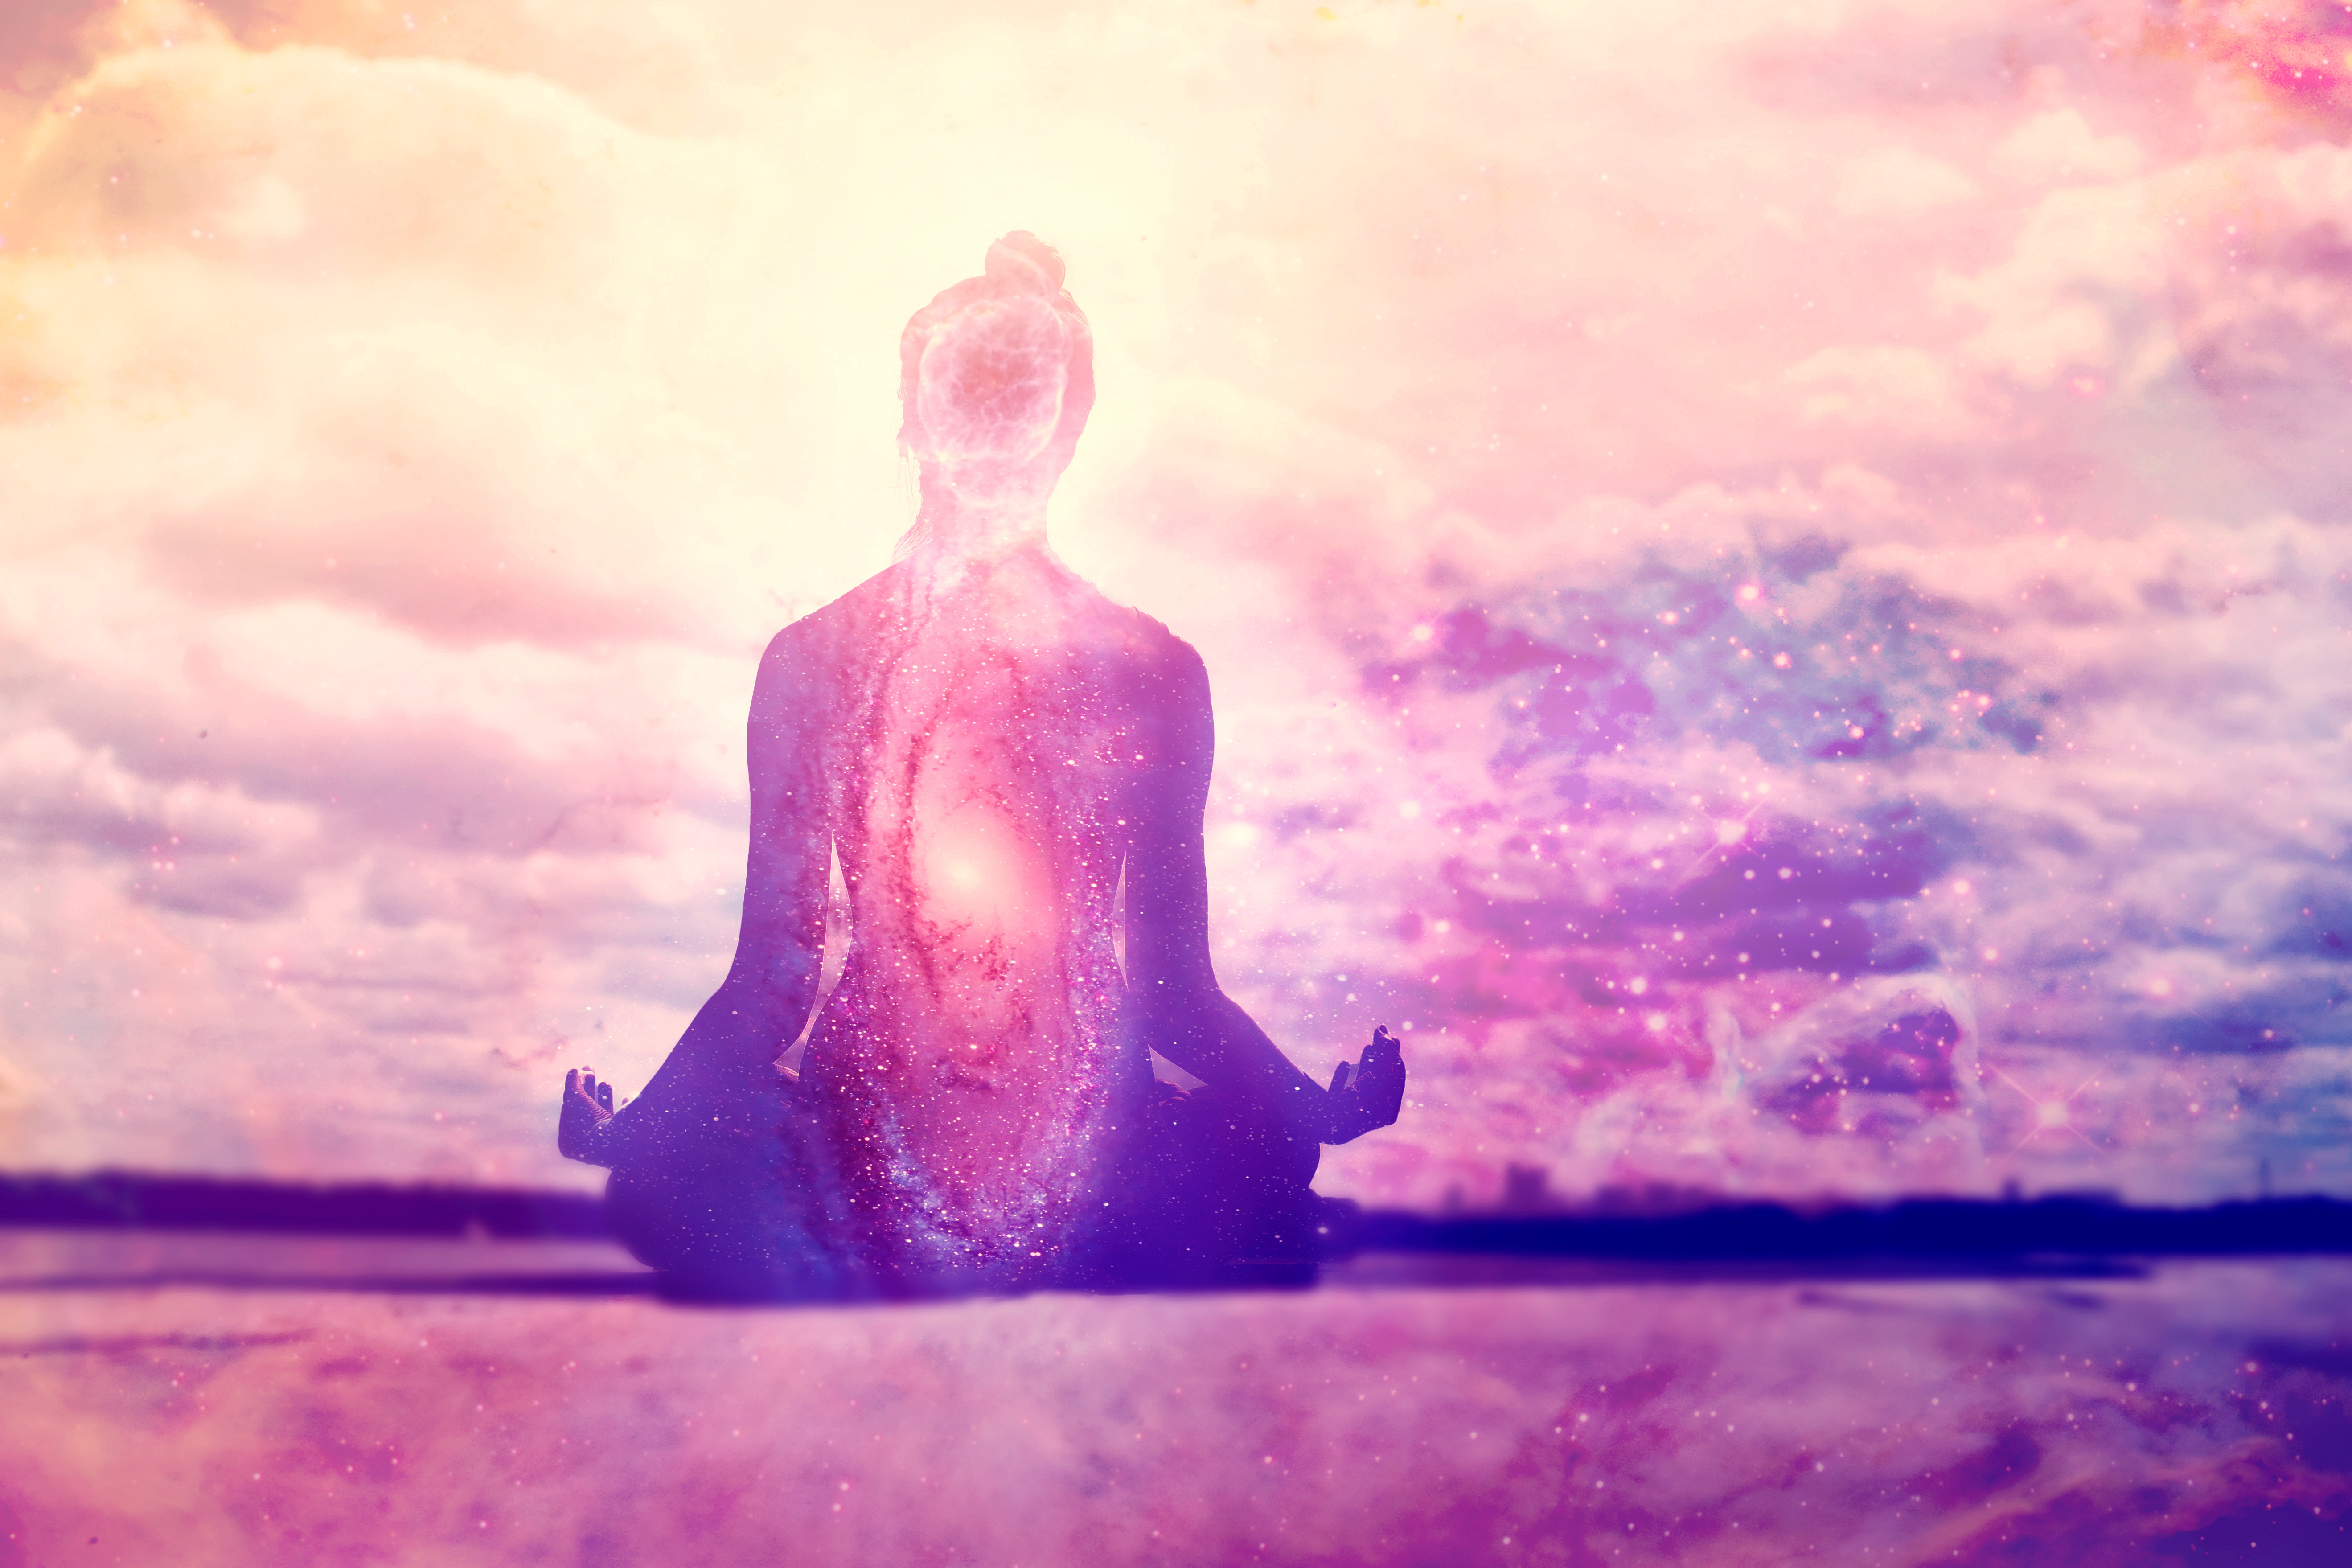 Meditation healing